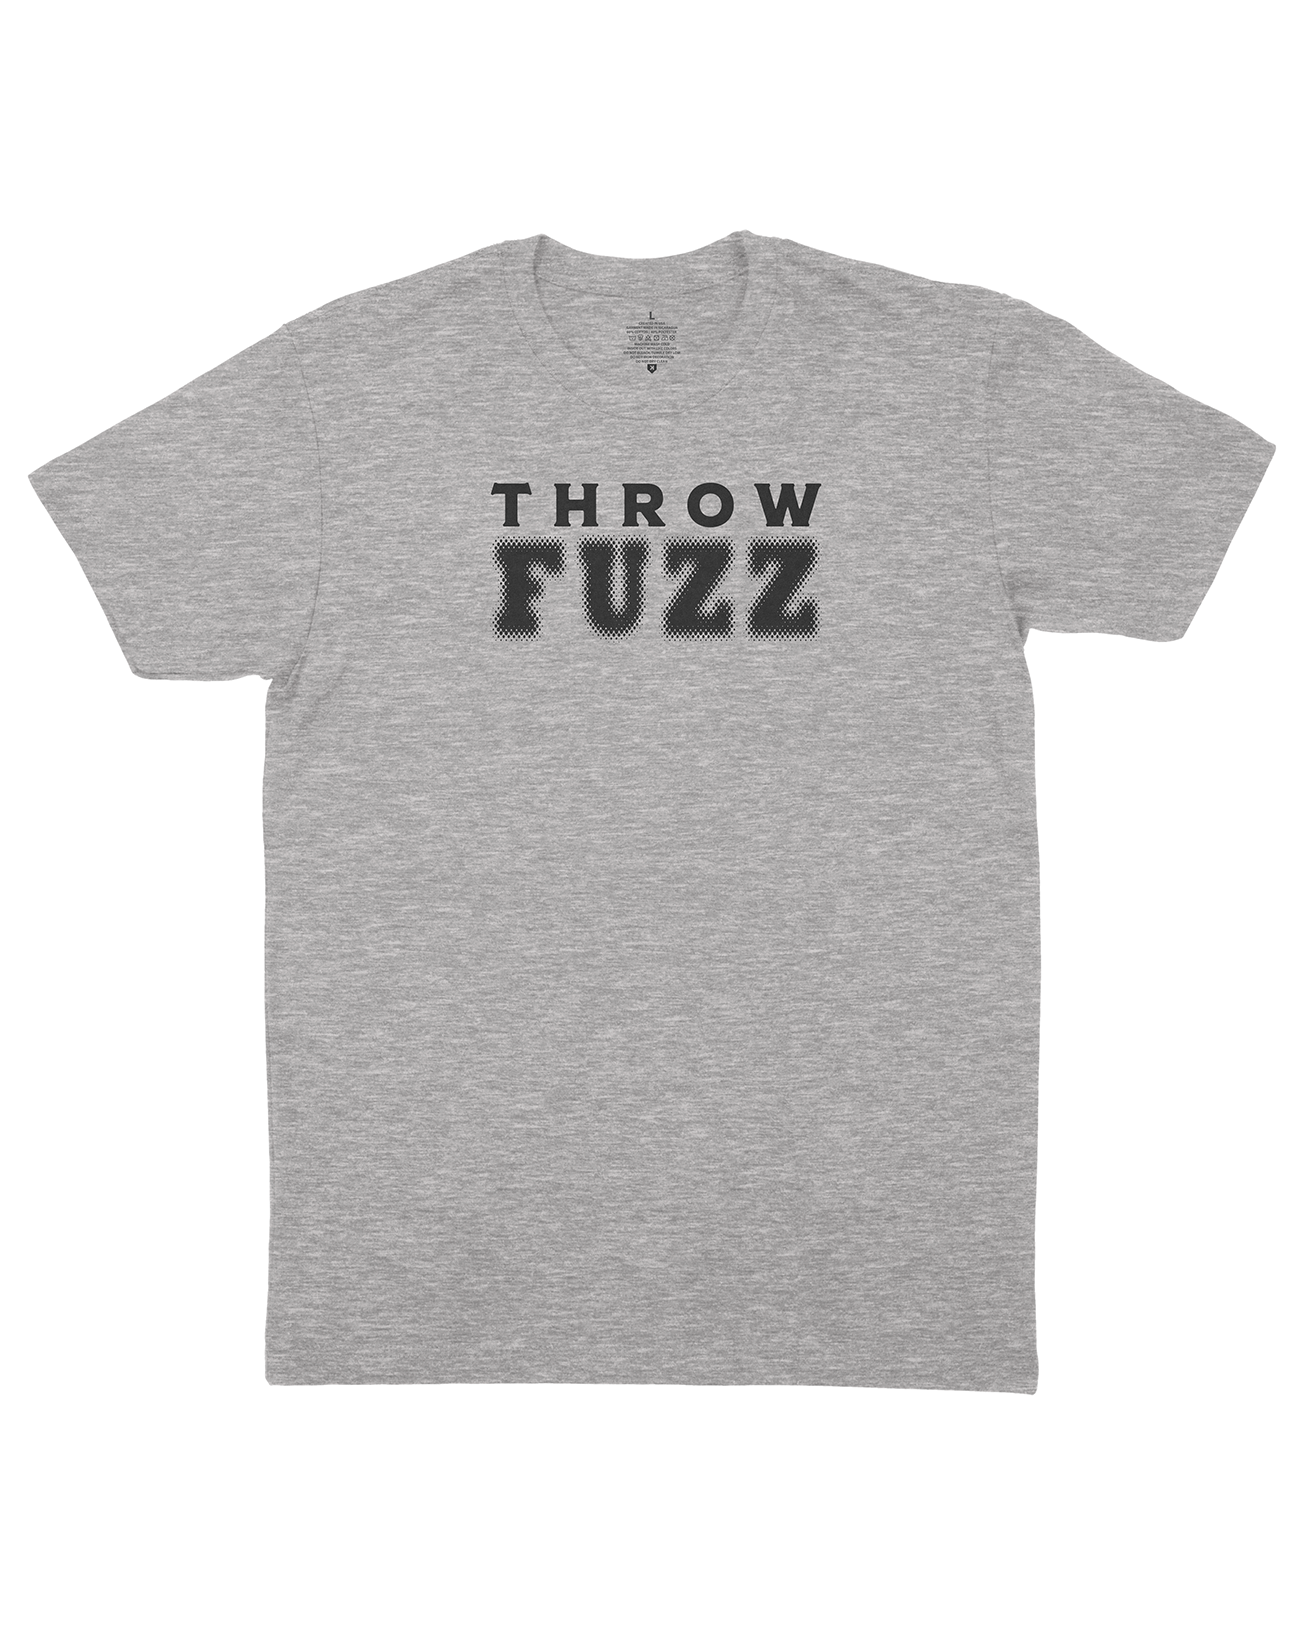 Throw Fuzz Tee